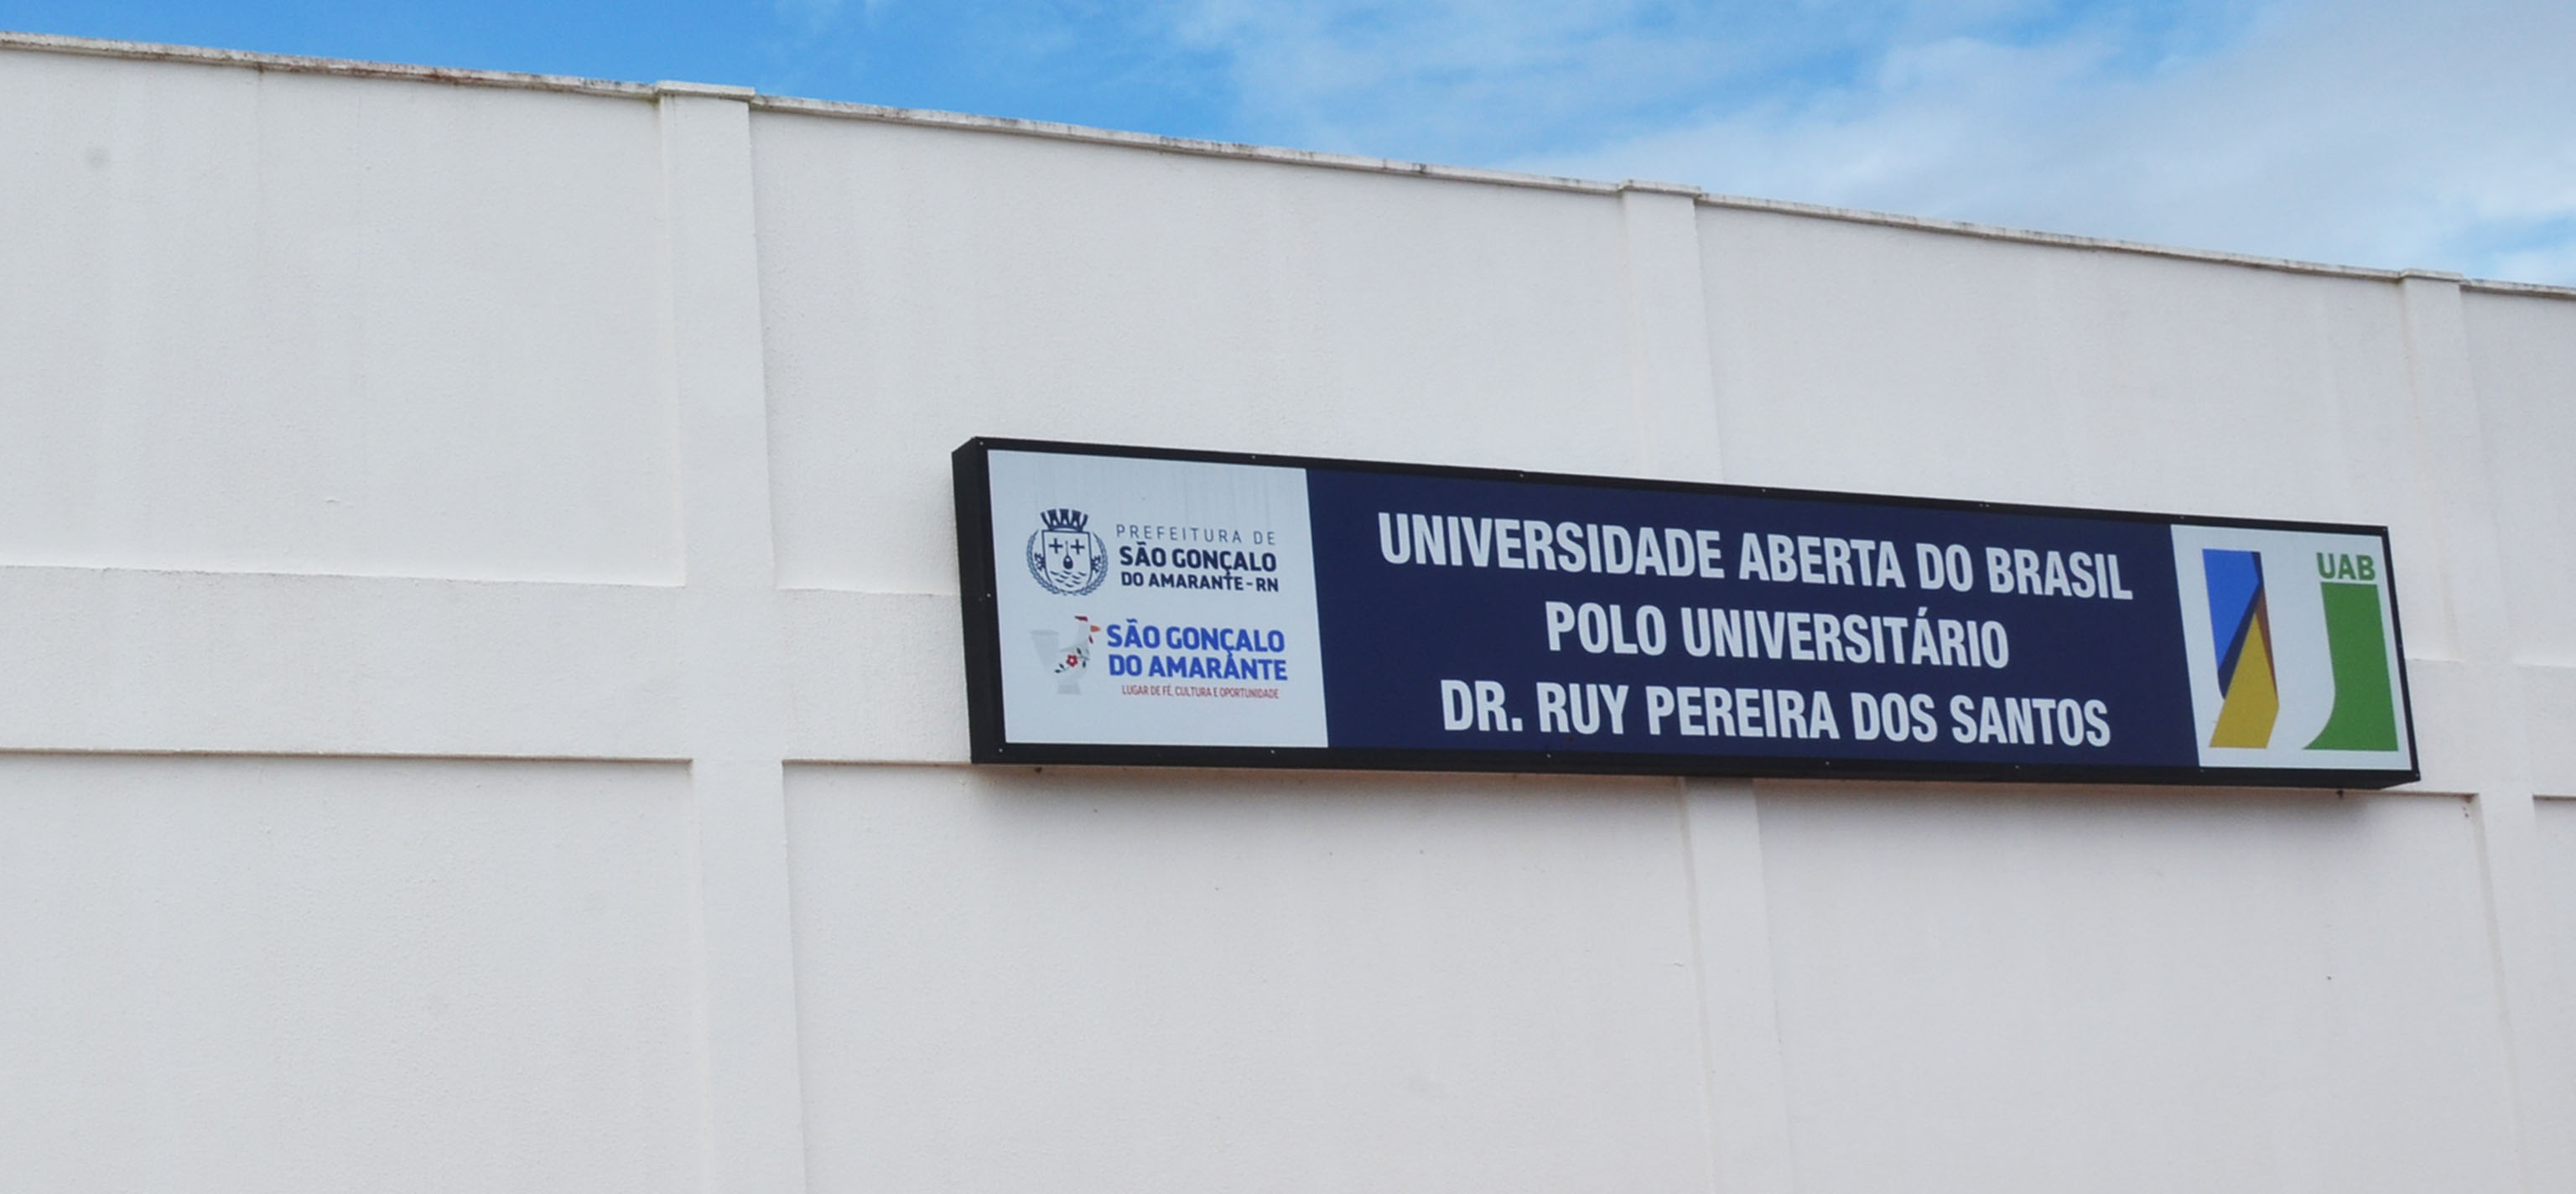 Polo da Universidade Aberta do Brasil oferece cursos gratuitos em São Gonçalo